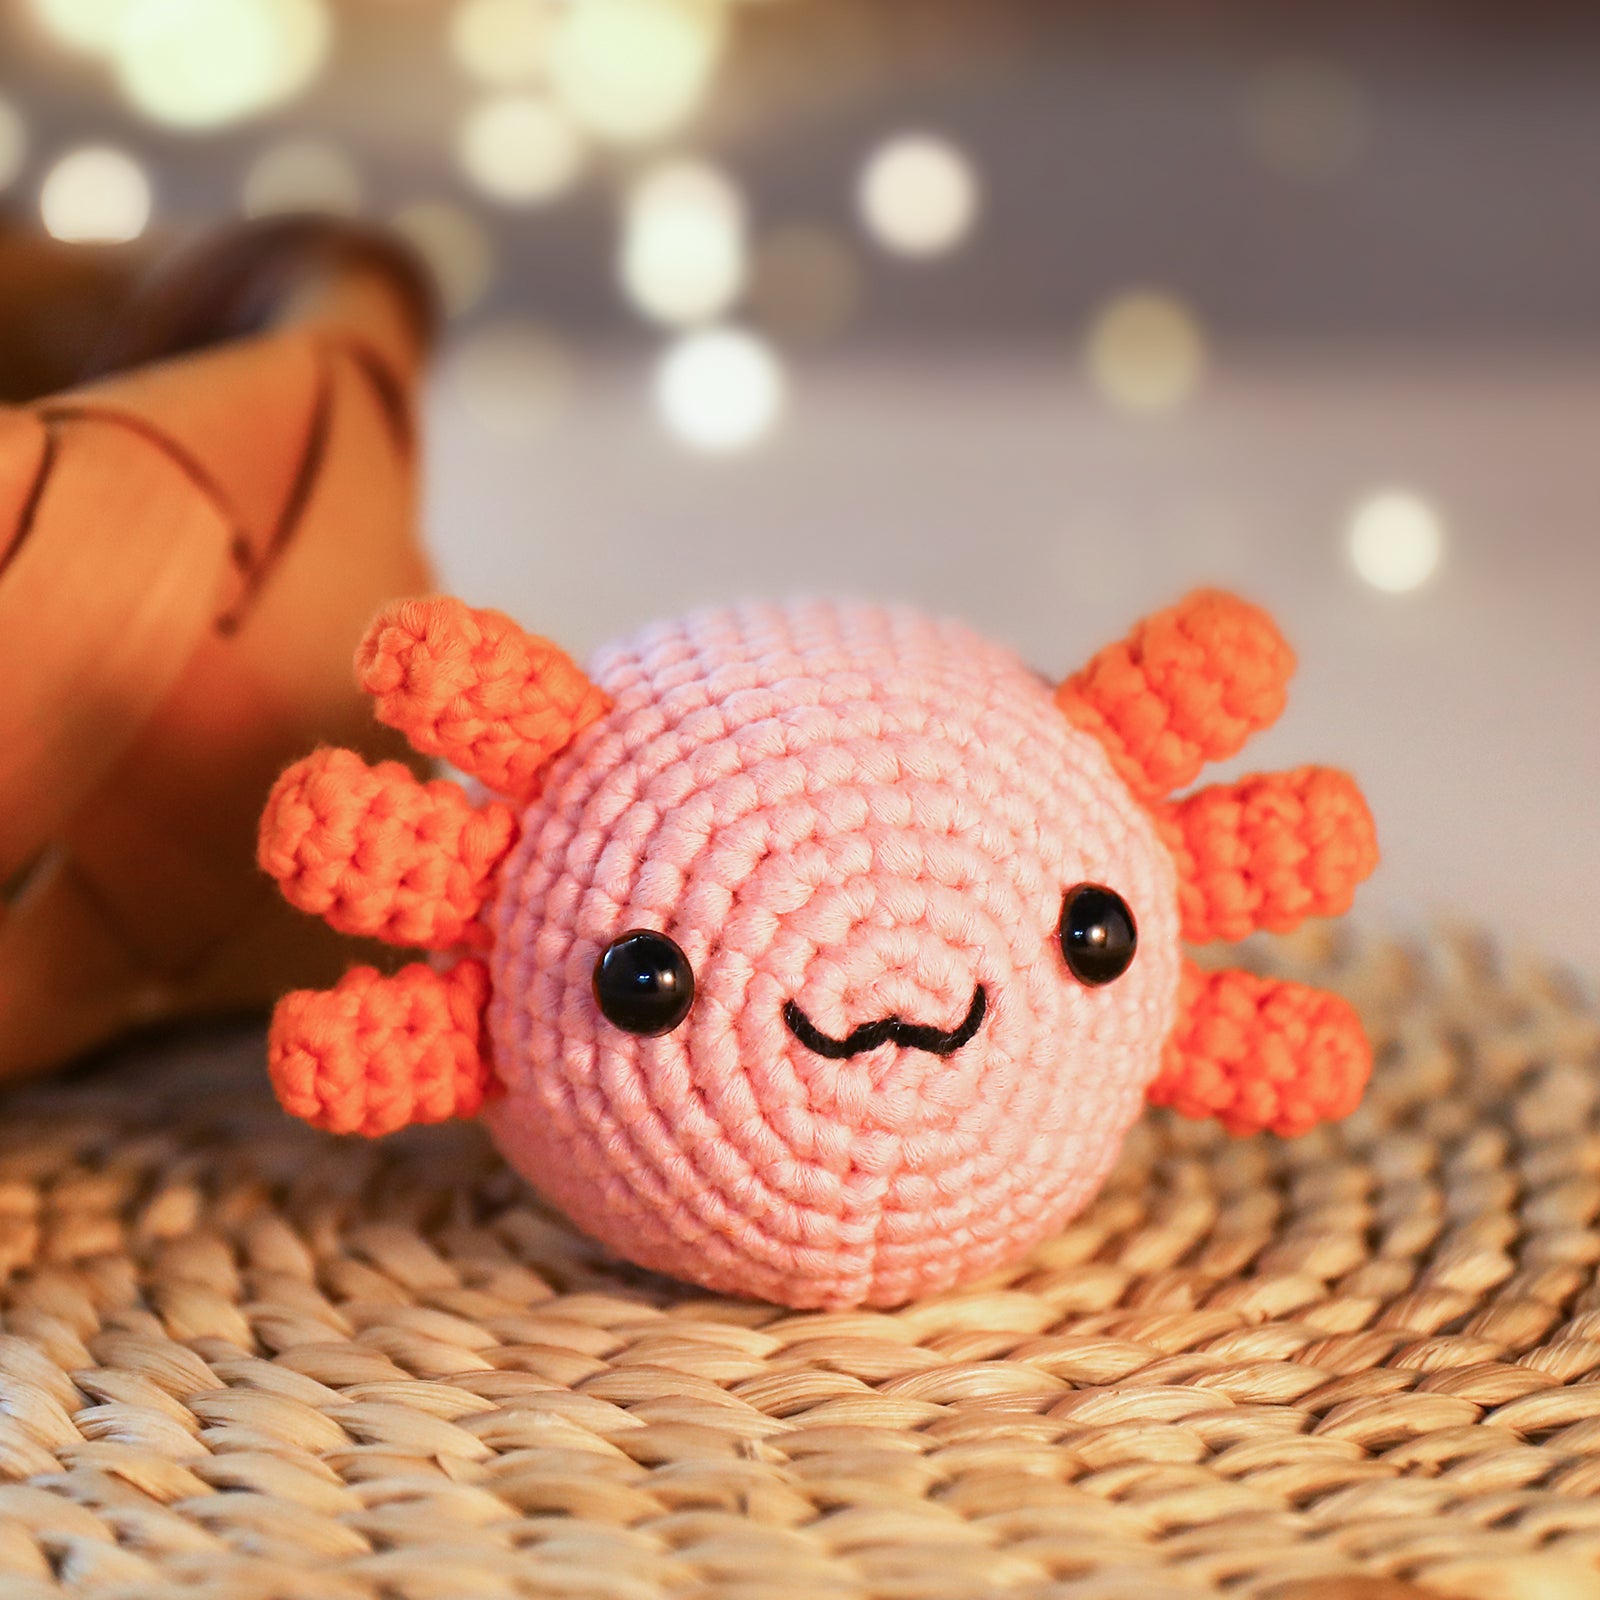 Crochet Kit for Beginners 